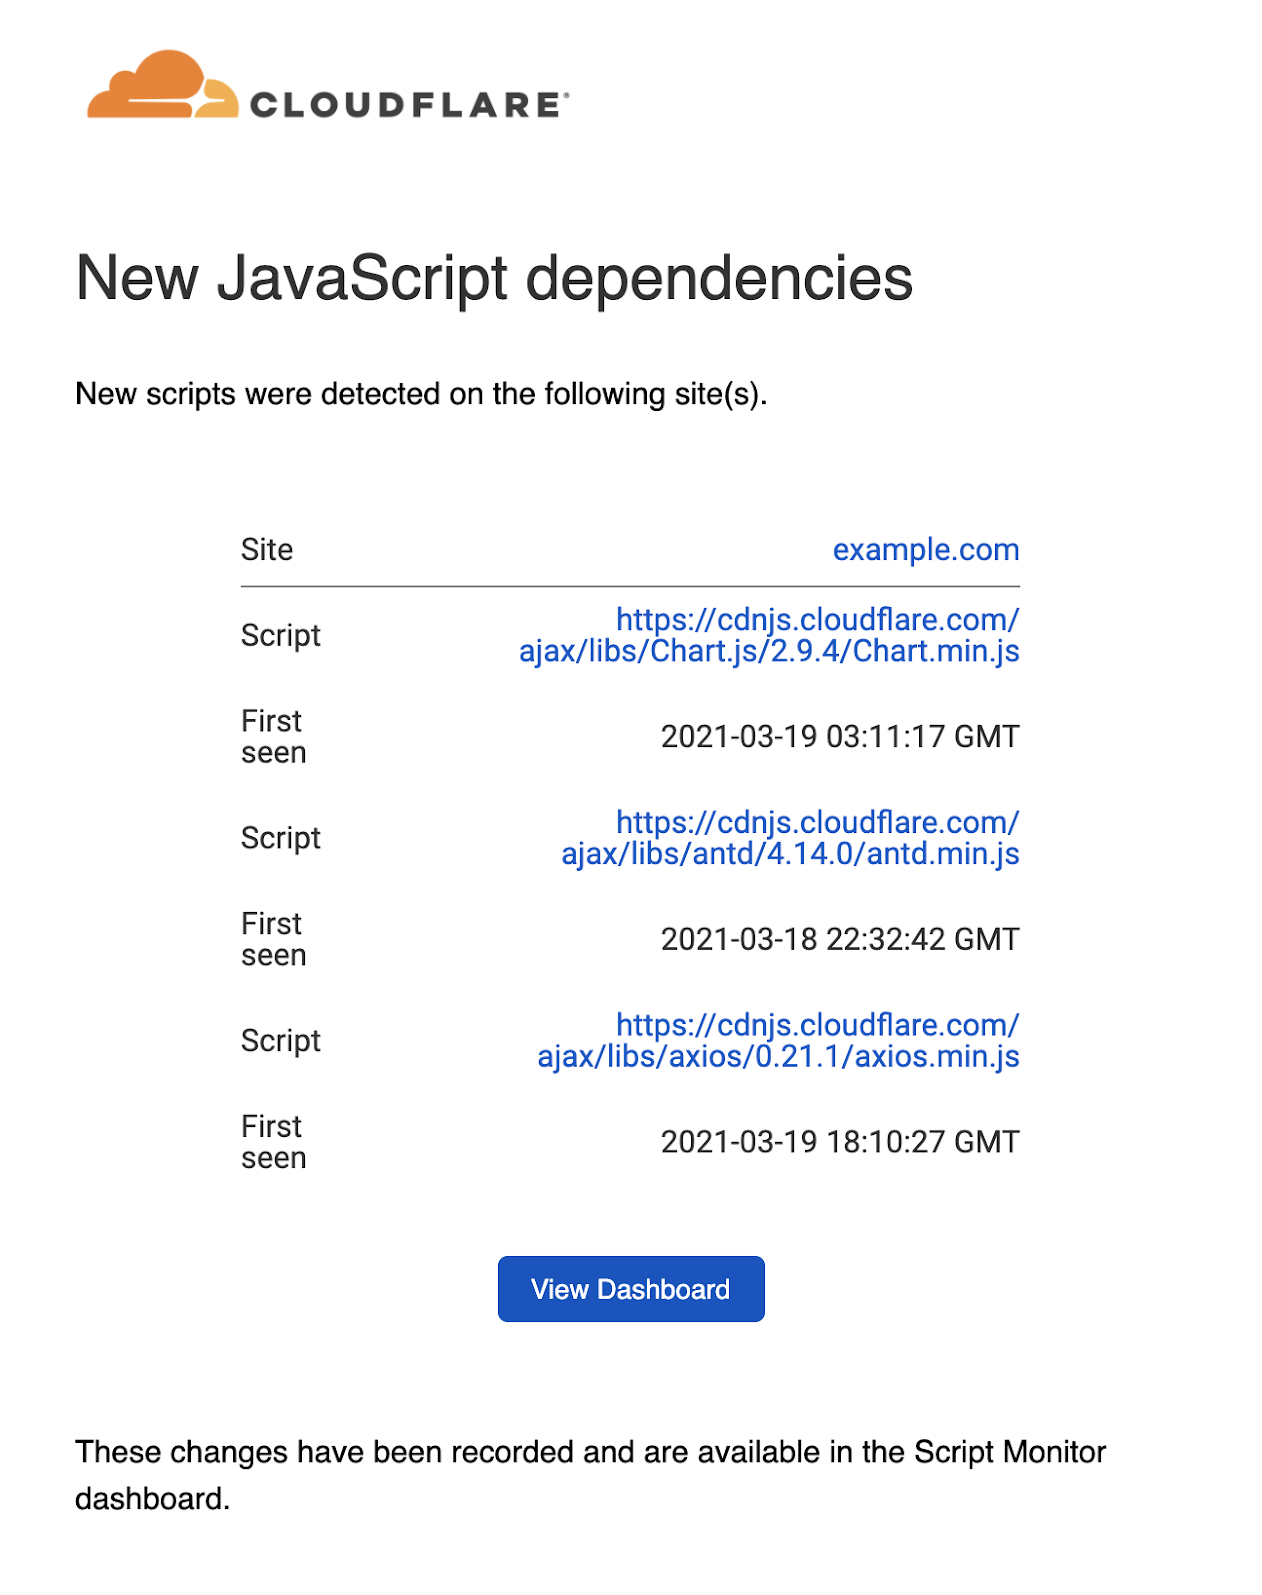 Contoh notifikasi email untuk dependensi JavaScript baru telah ditemukan